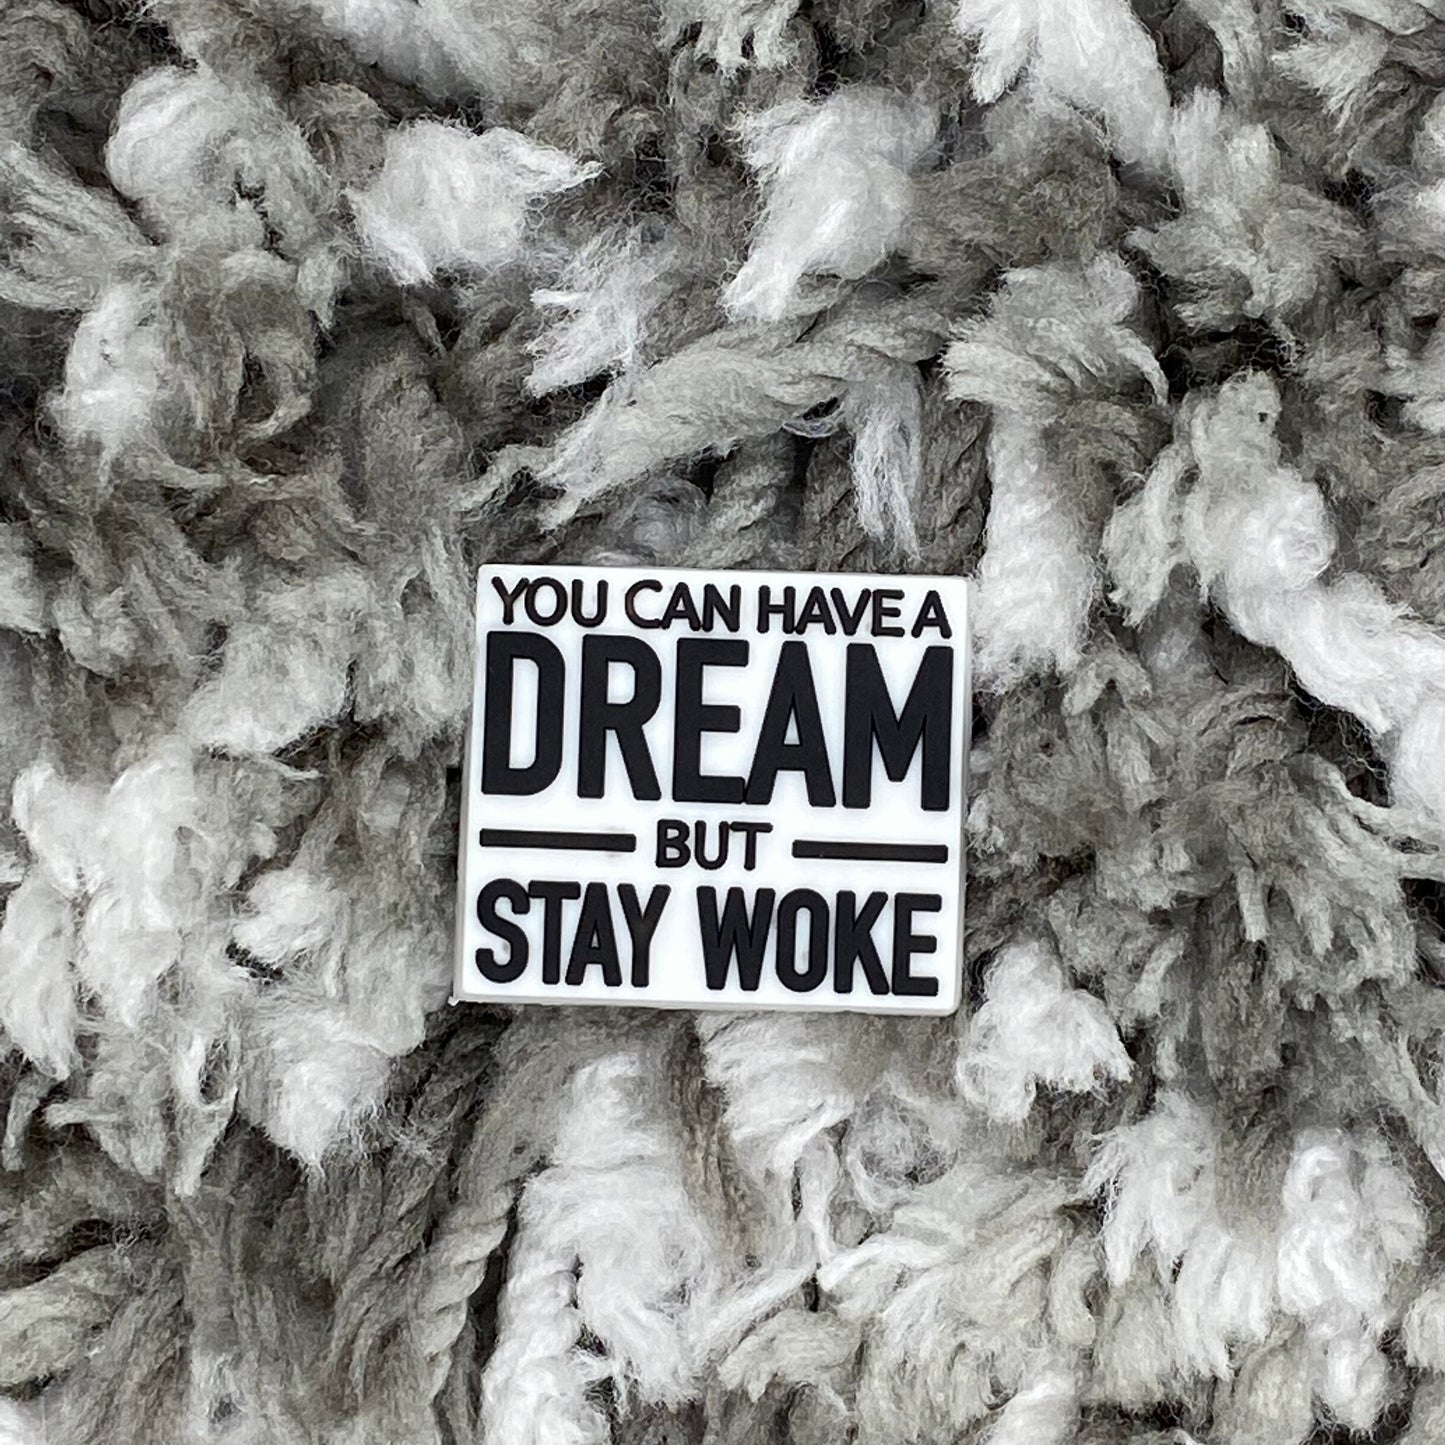 Dream but stay woke